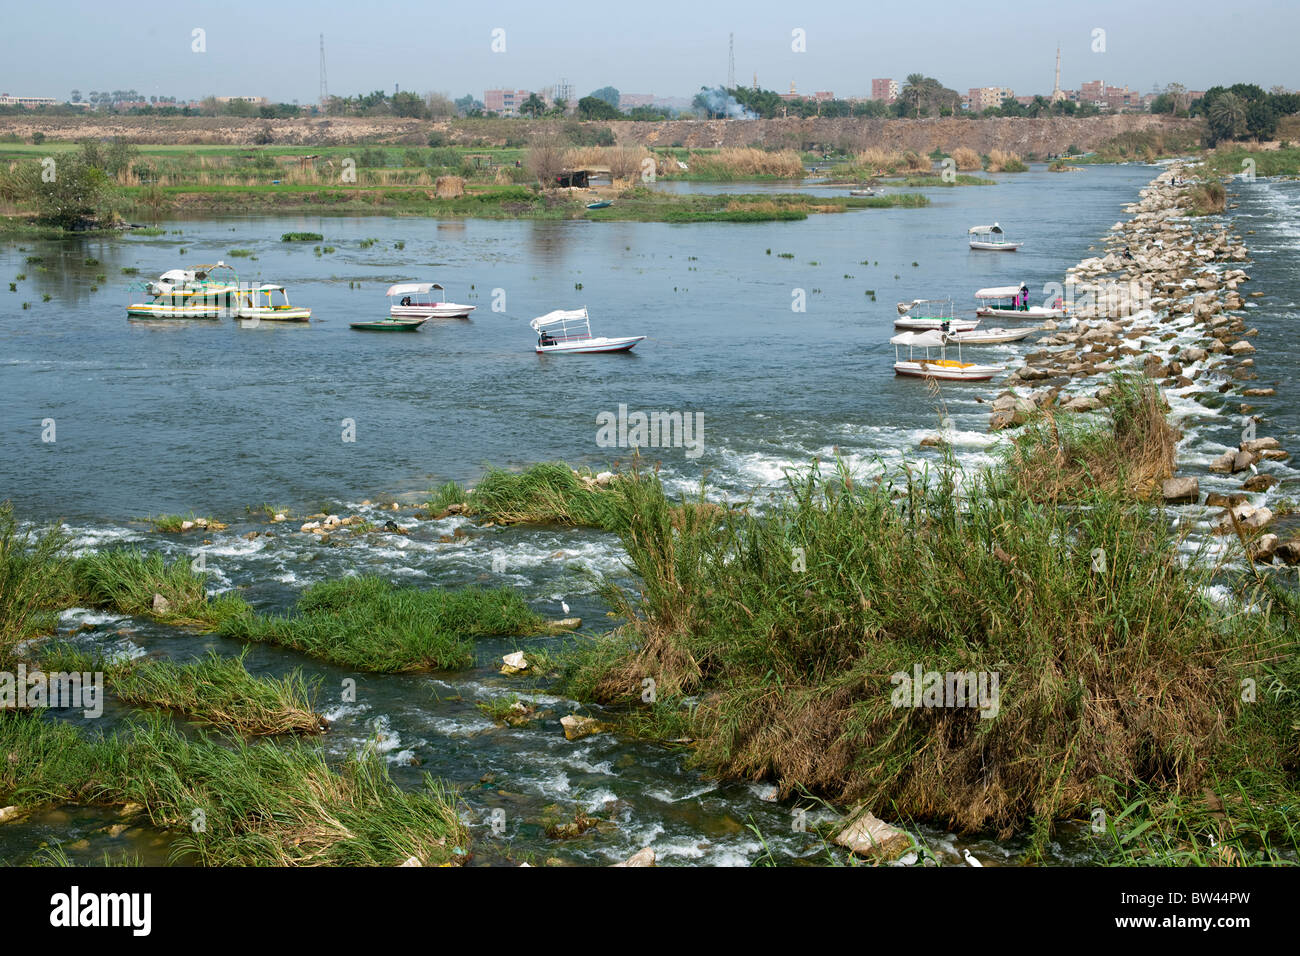 Aegypten, Kairo, Qanater (Kanater), barrages du Nil, besonders am Wochenende ein beliebtes Ausflugsziel Banque D'Images